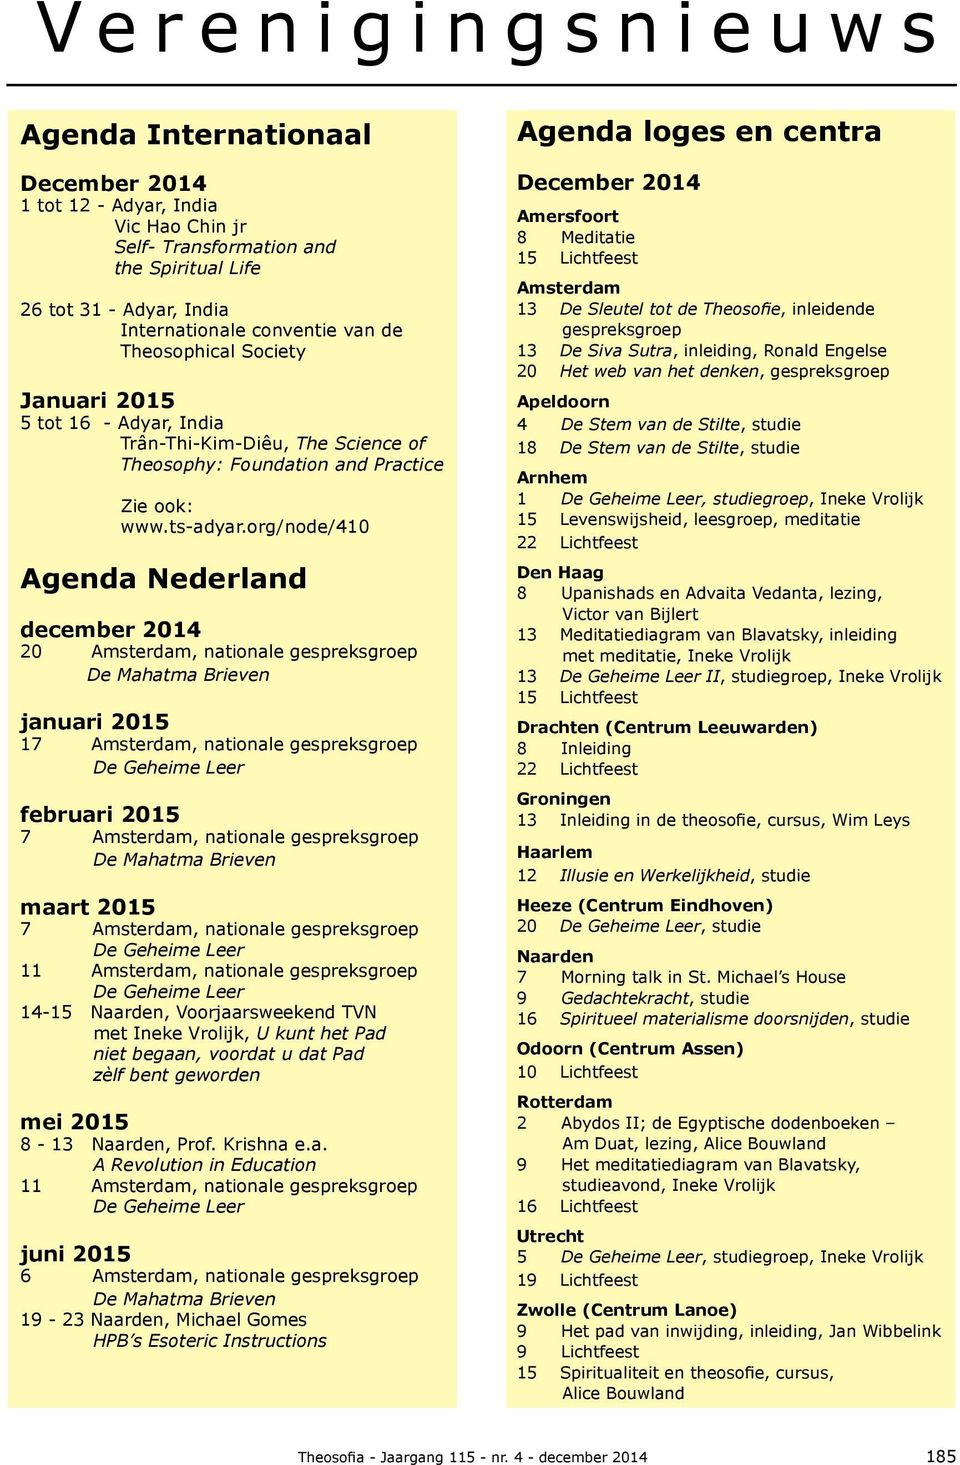 org/node/410 Agenda Nederland december 2014 20, nationale januari 2015 17, nationale februari 2015 7, nationale maart 2015 7, nationale 11, nationale 14-15, Voorjaarsweekend TVN met, U kunt het Pad